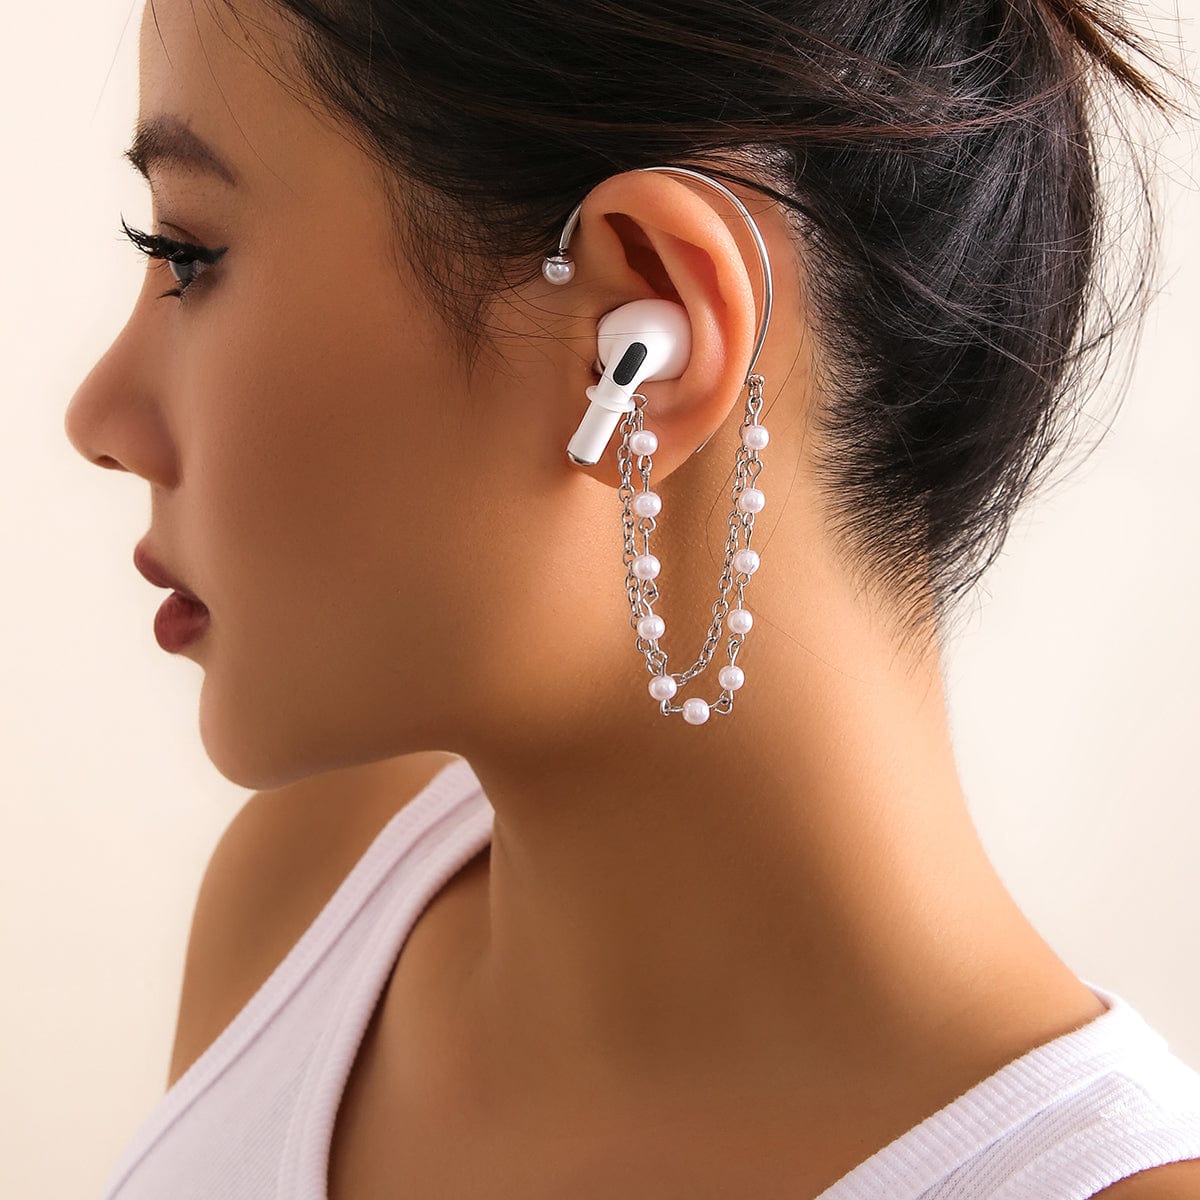 Anti-lost Wireless AirPods Earphone Pearl Chain Ear Wrap